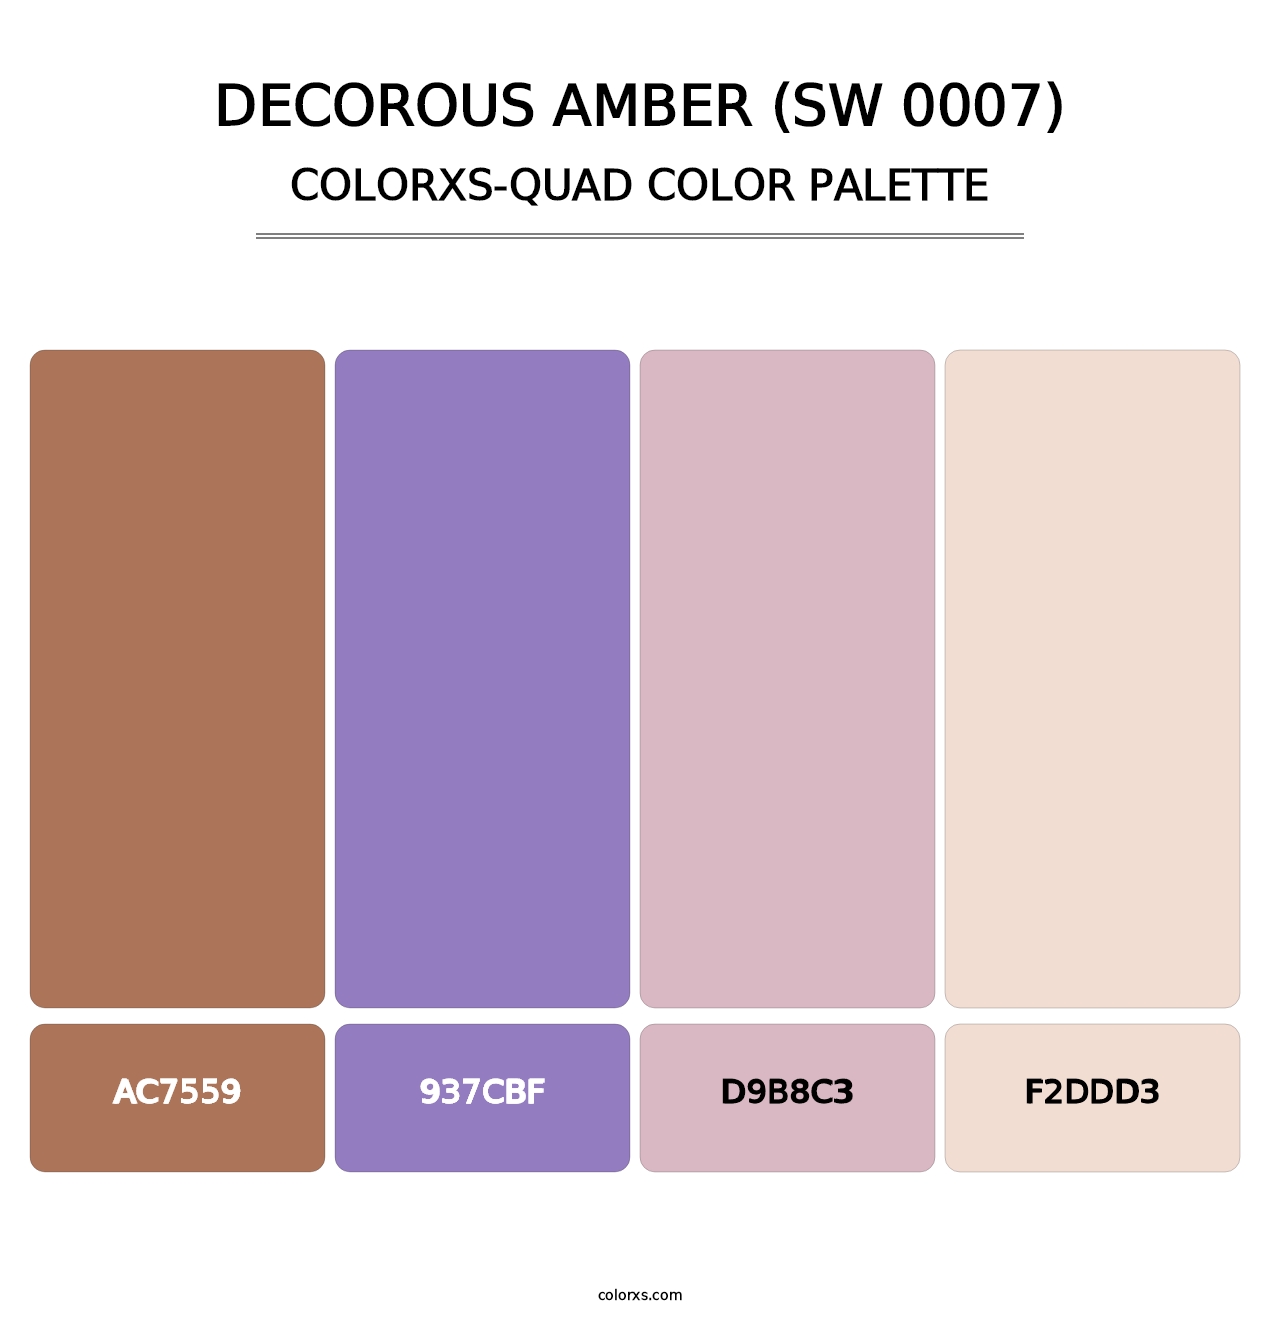 Decorous Amber (SW 0007) - Colorxs Quad Palette